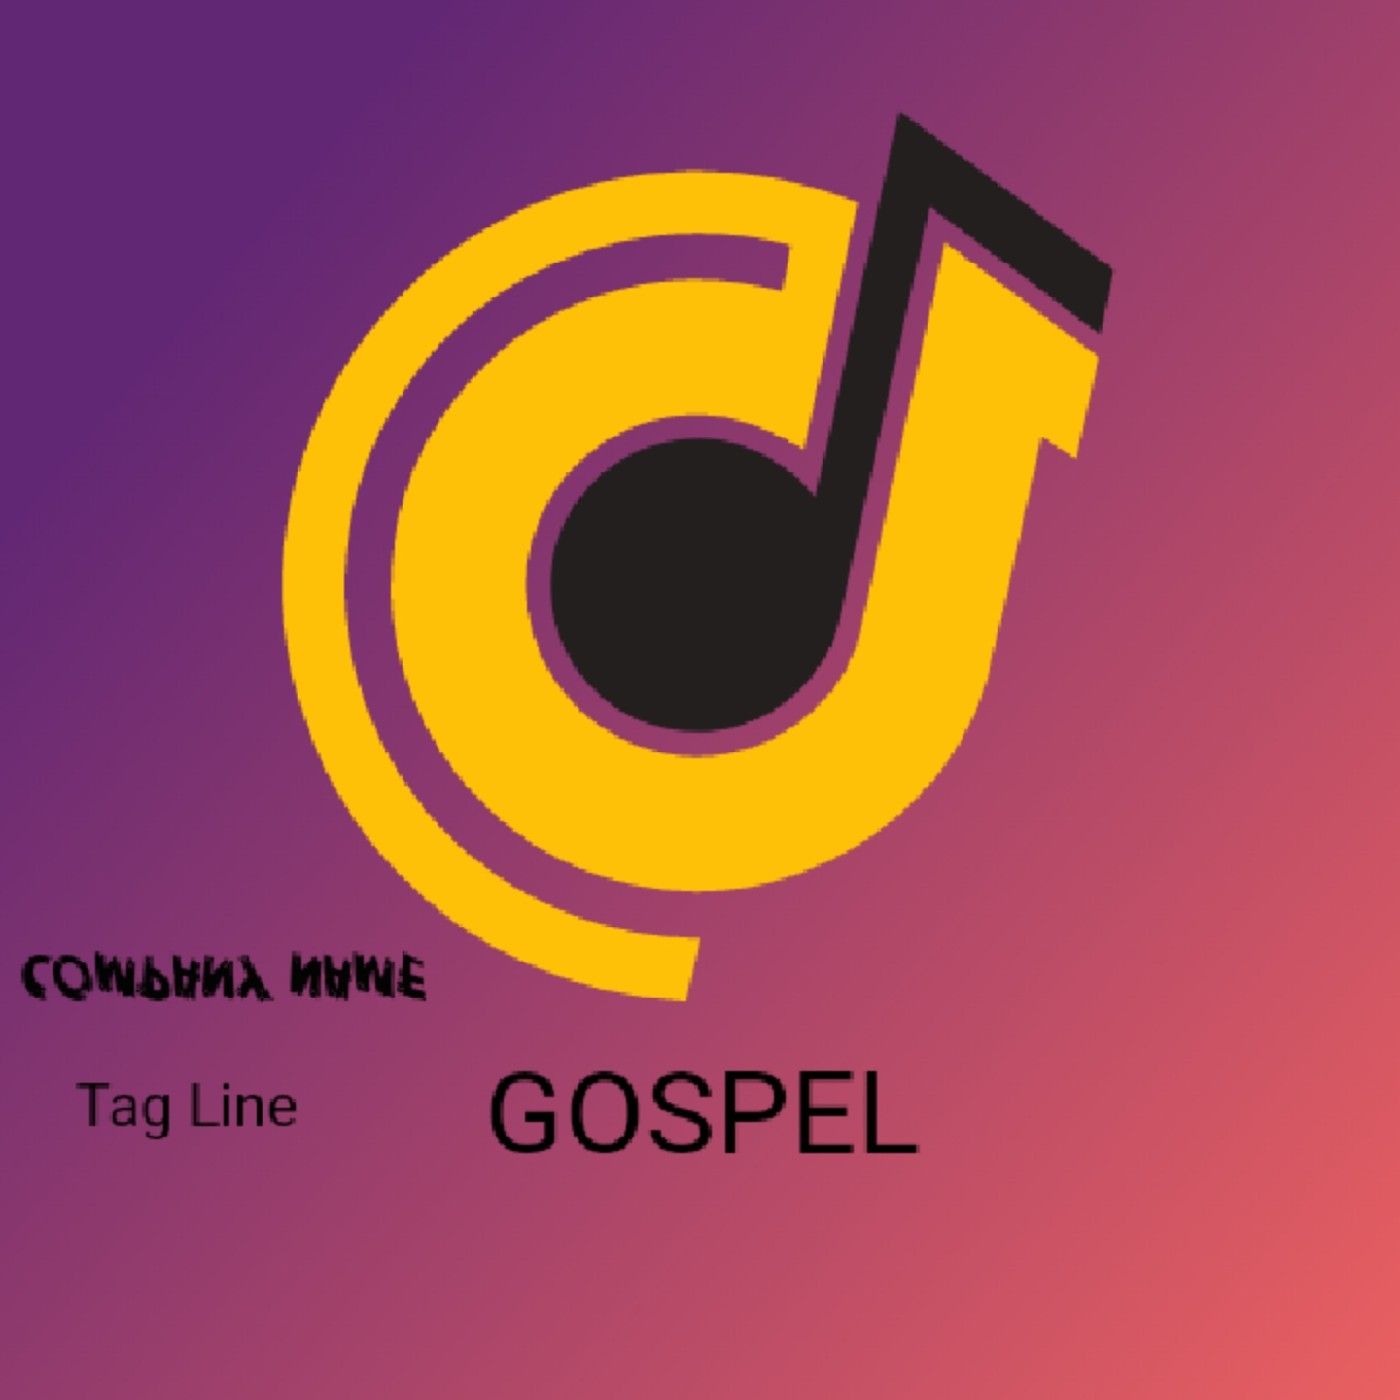 GOSPEL FM